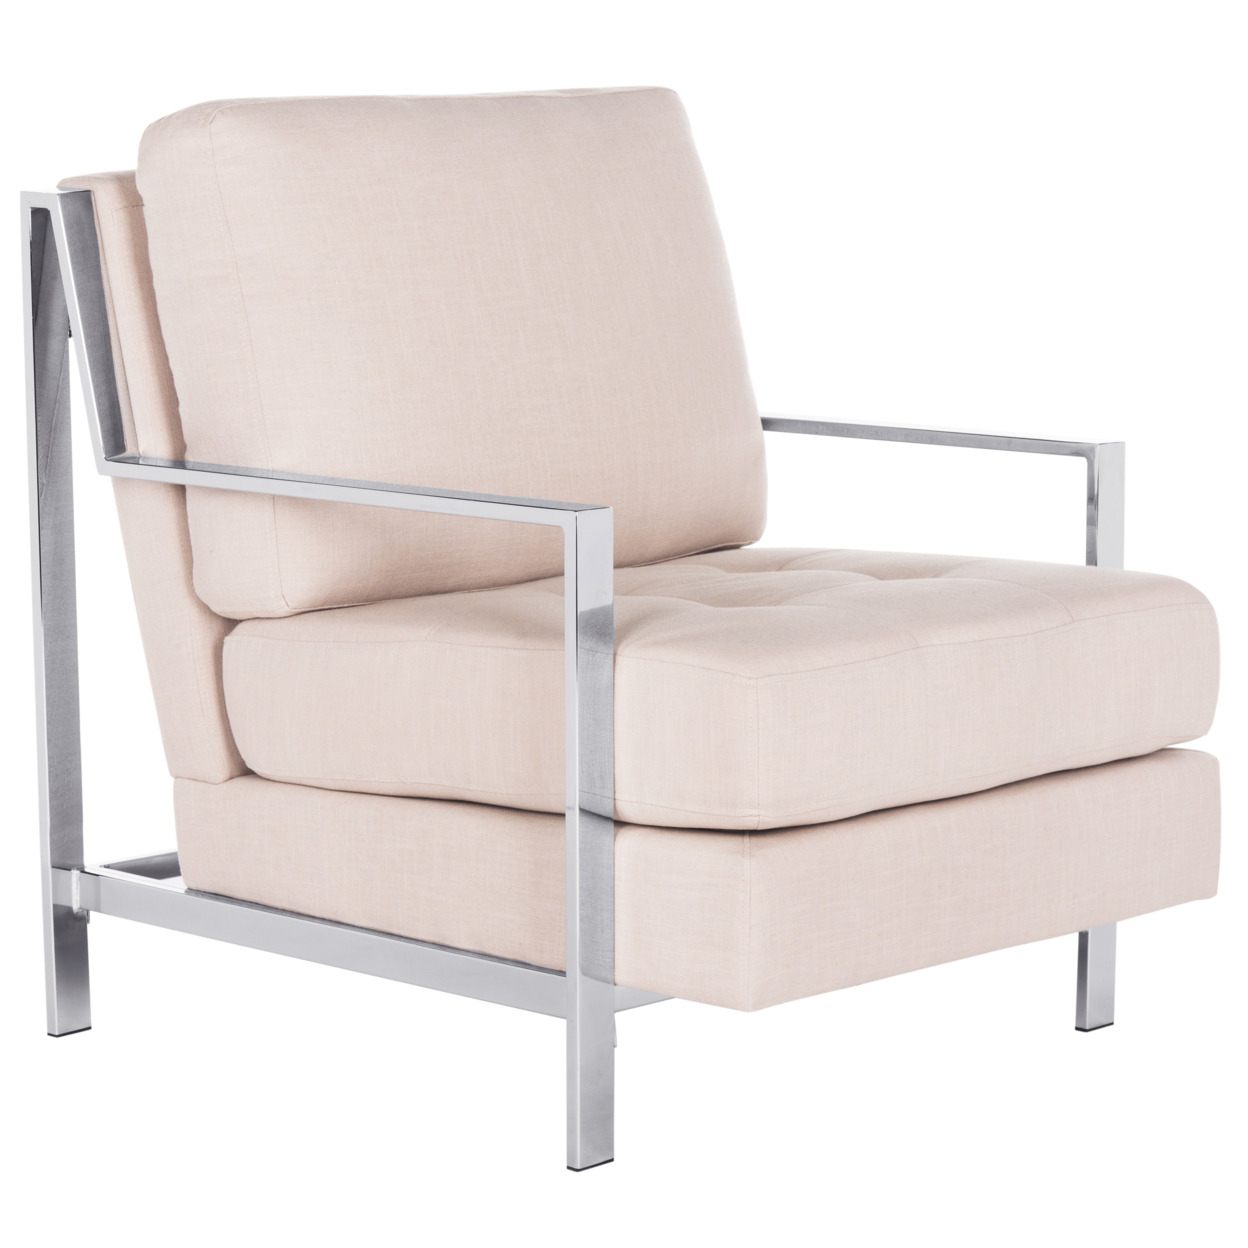 SAFAVIEH Walden Modern Tufted Linen Chrome Accent Chair Beige